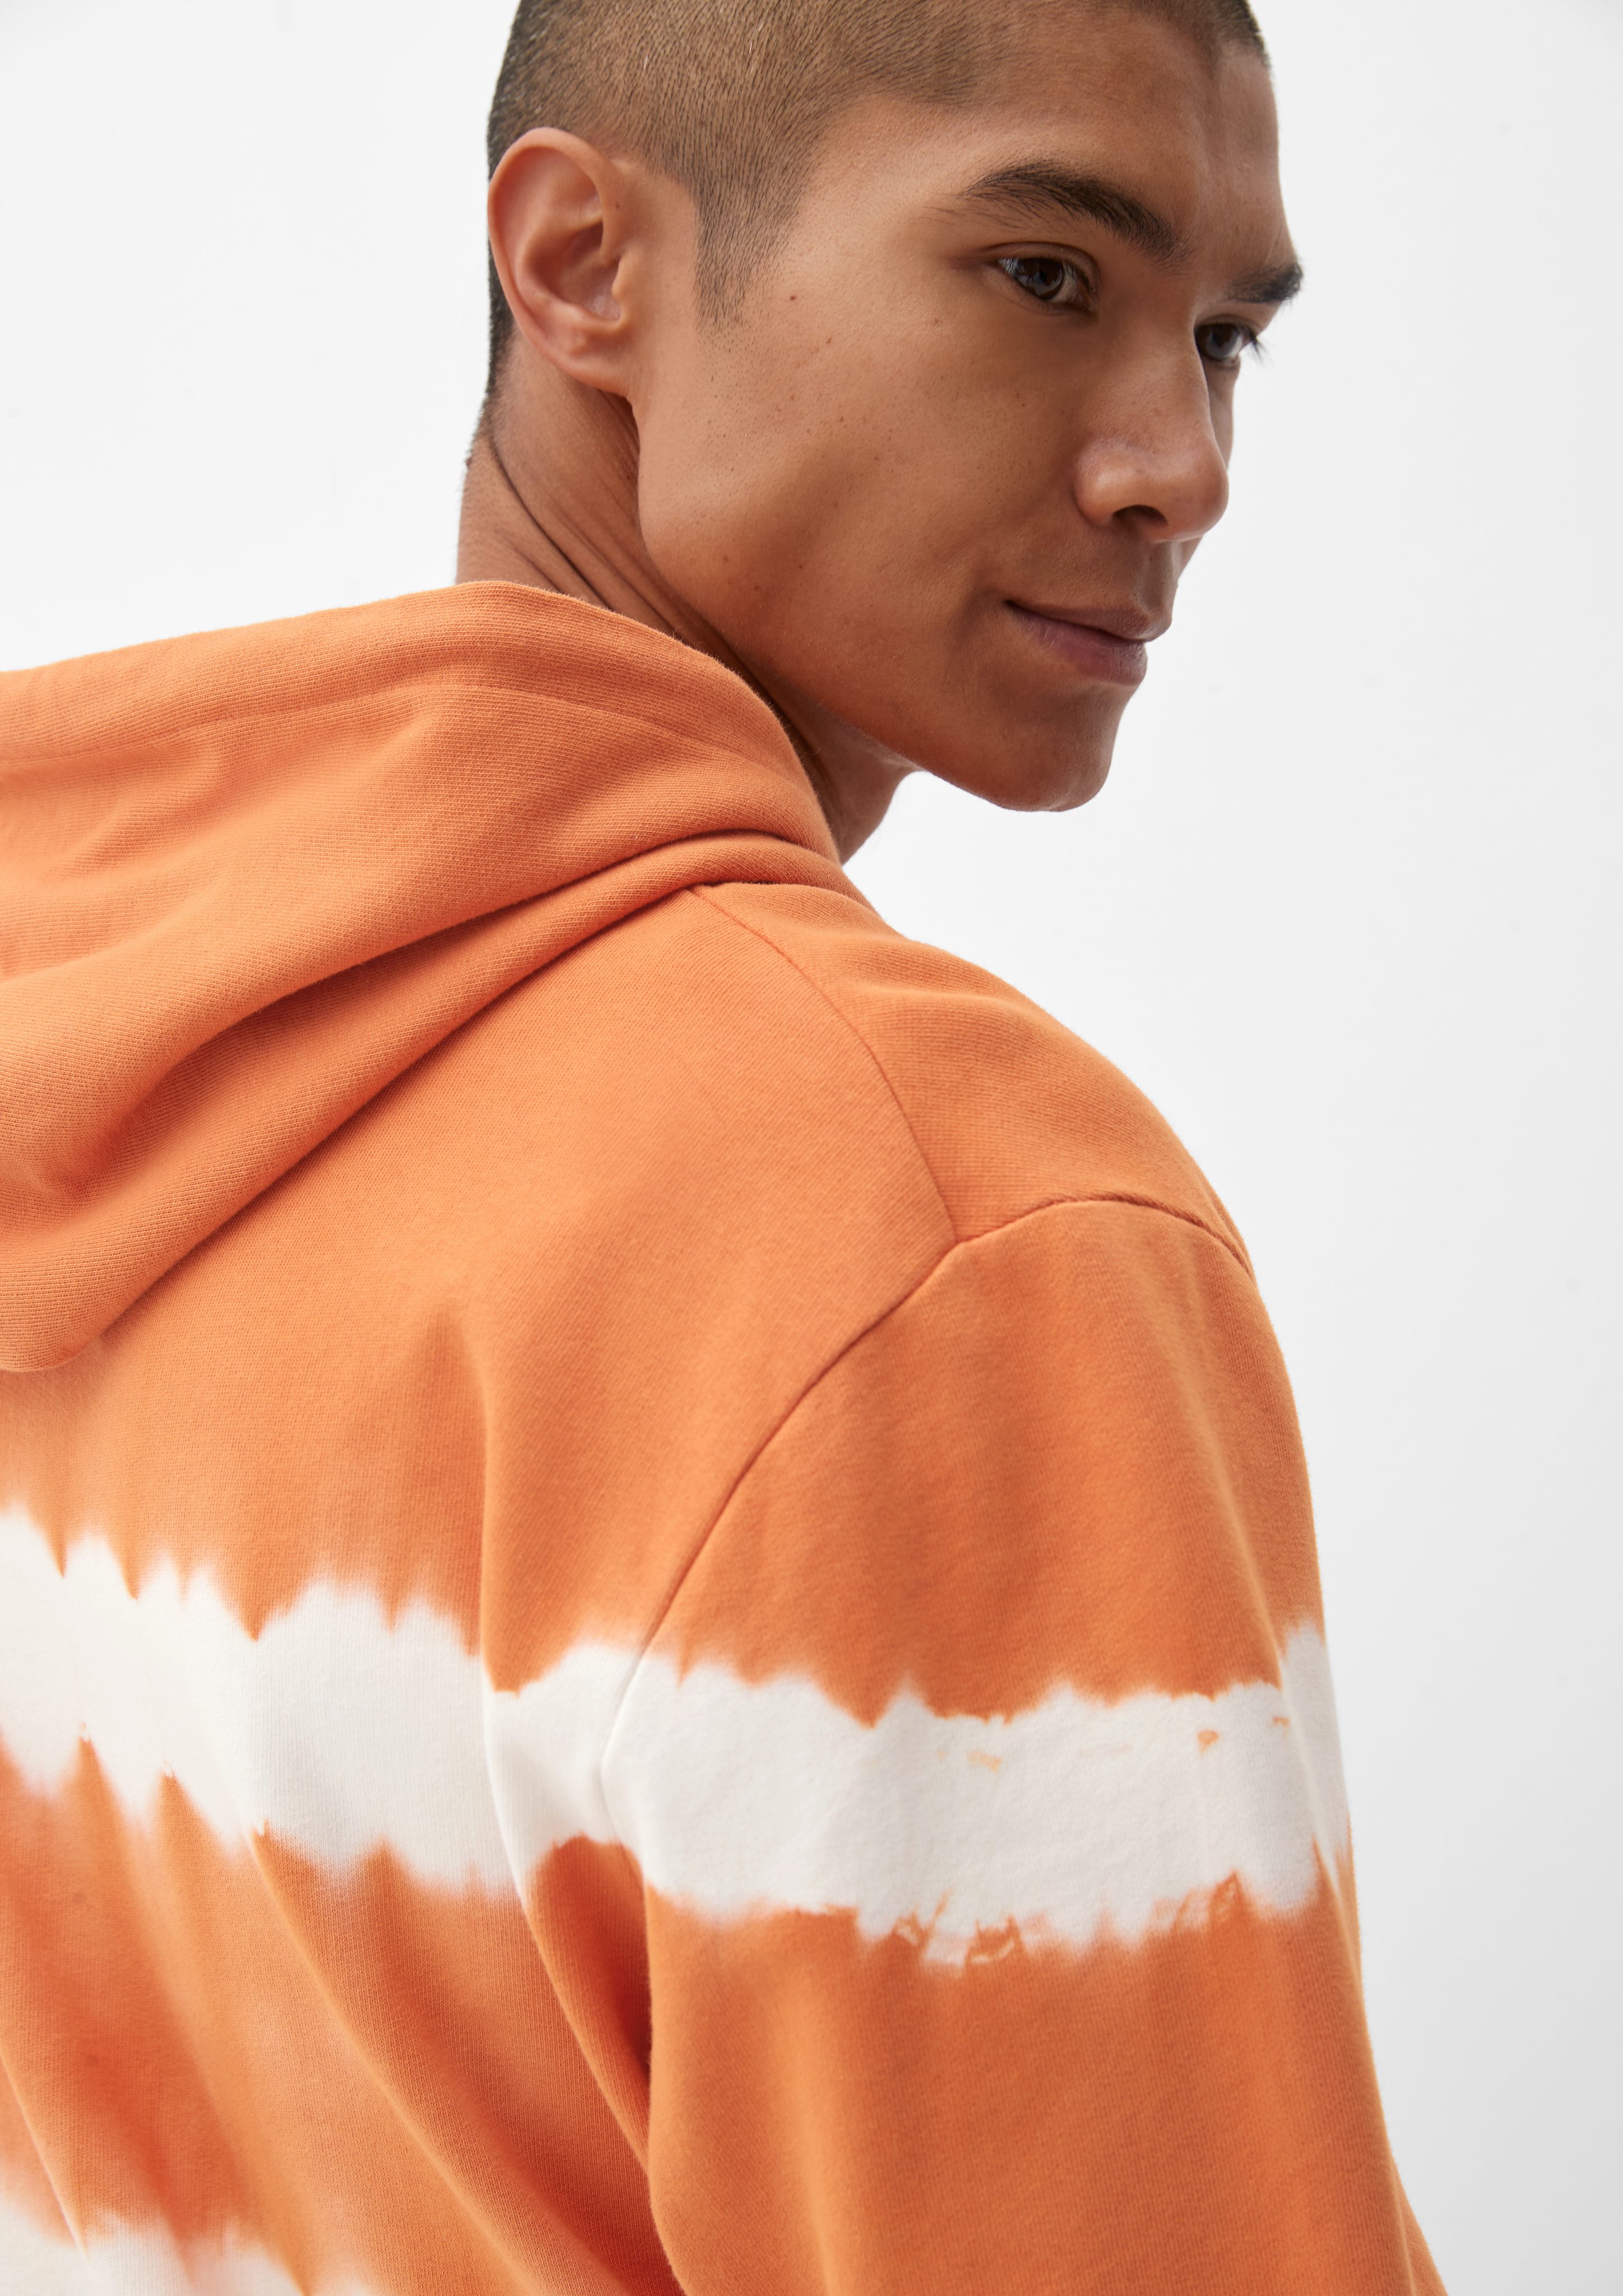 s.Oliver Sweatshirt Hoodie mit Garment orange Dye Streifenmuster